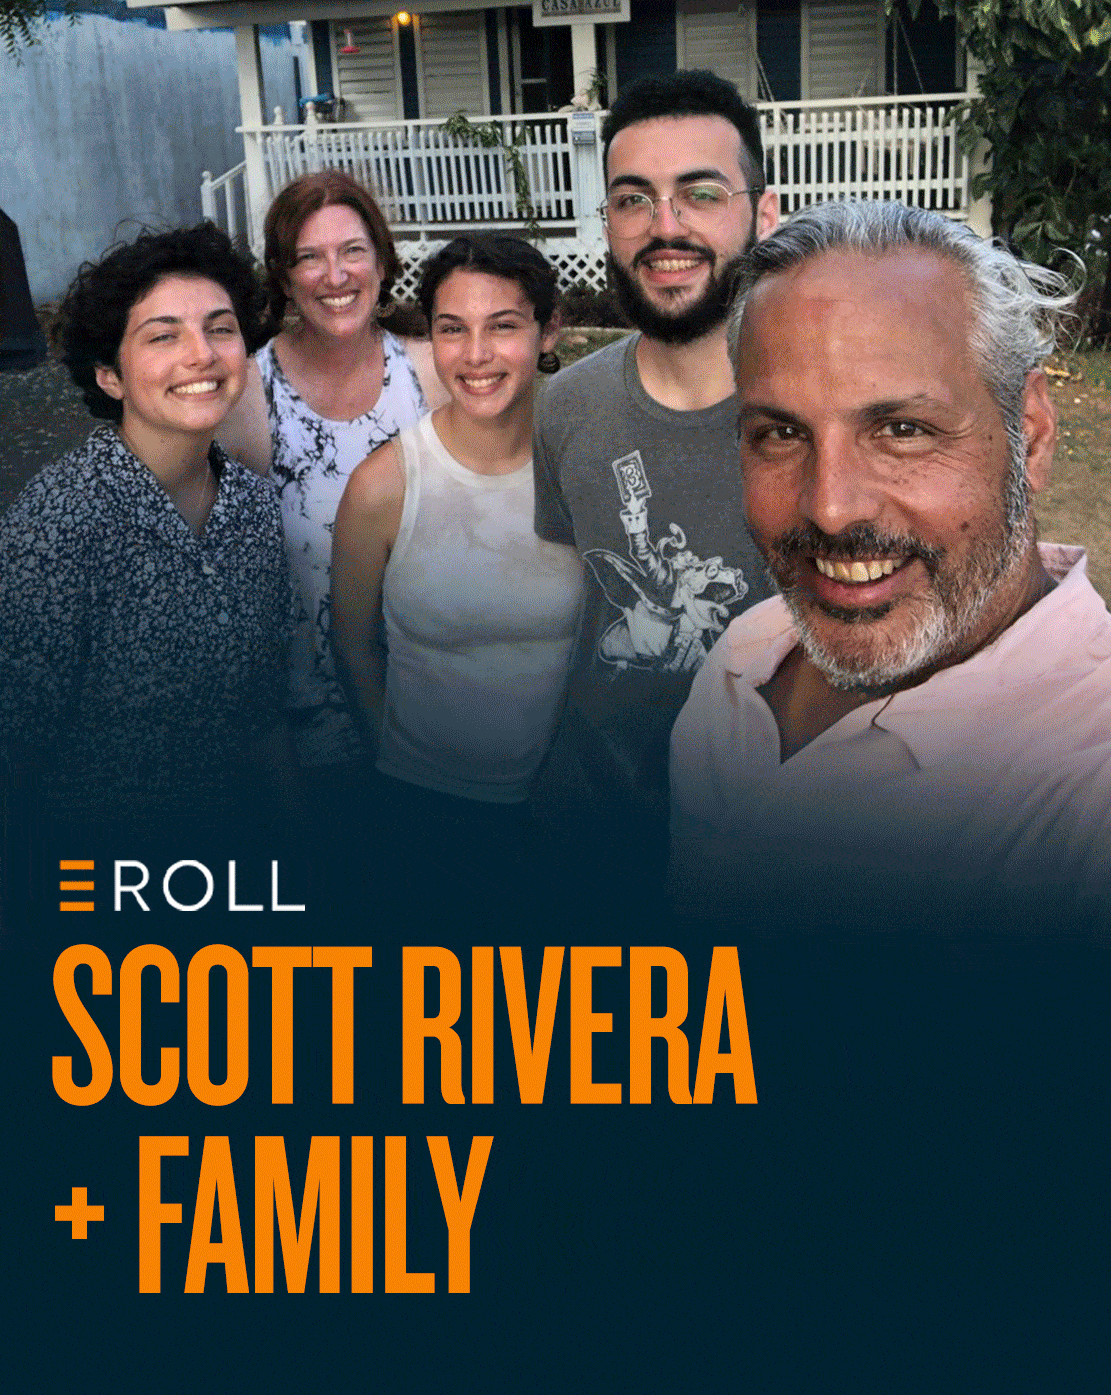 EPIC E-Roll | Video Director Scott Rivera and His Creative Family